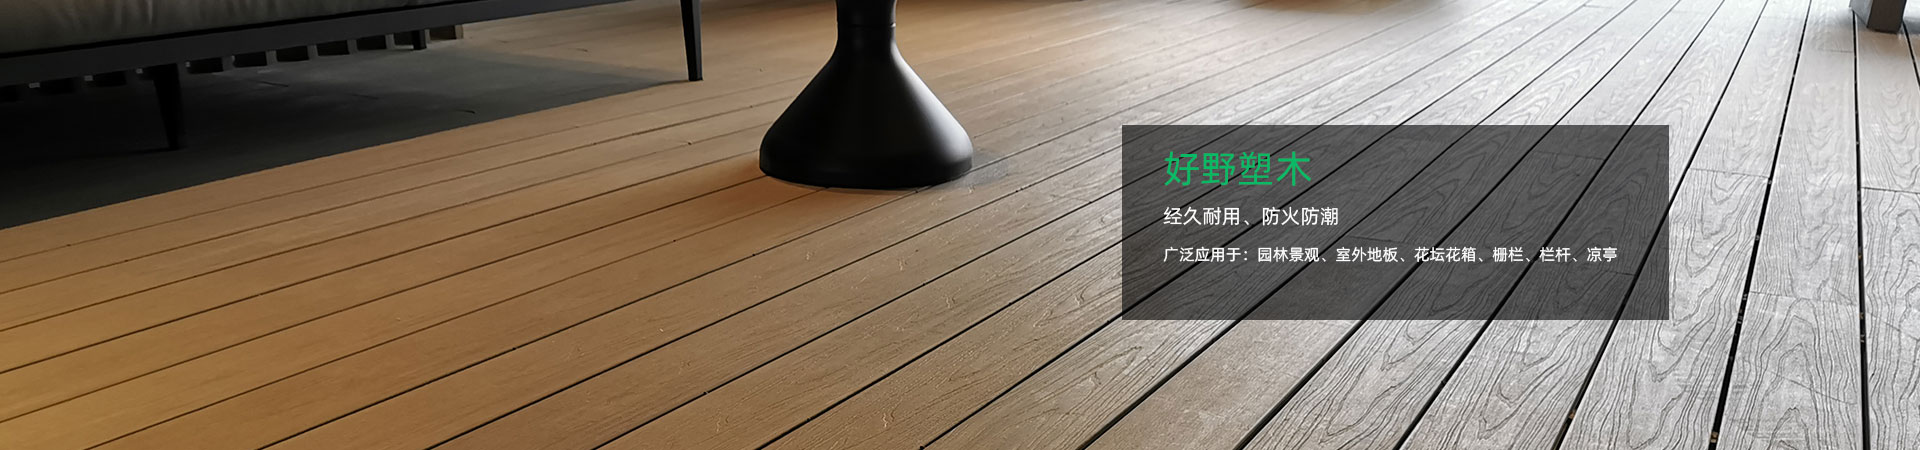 广州塑木地板